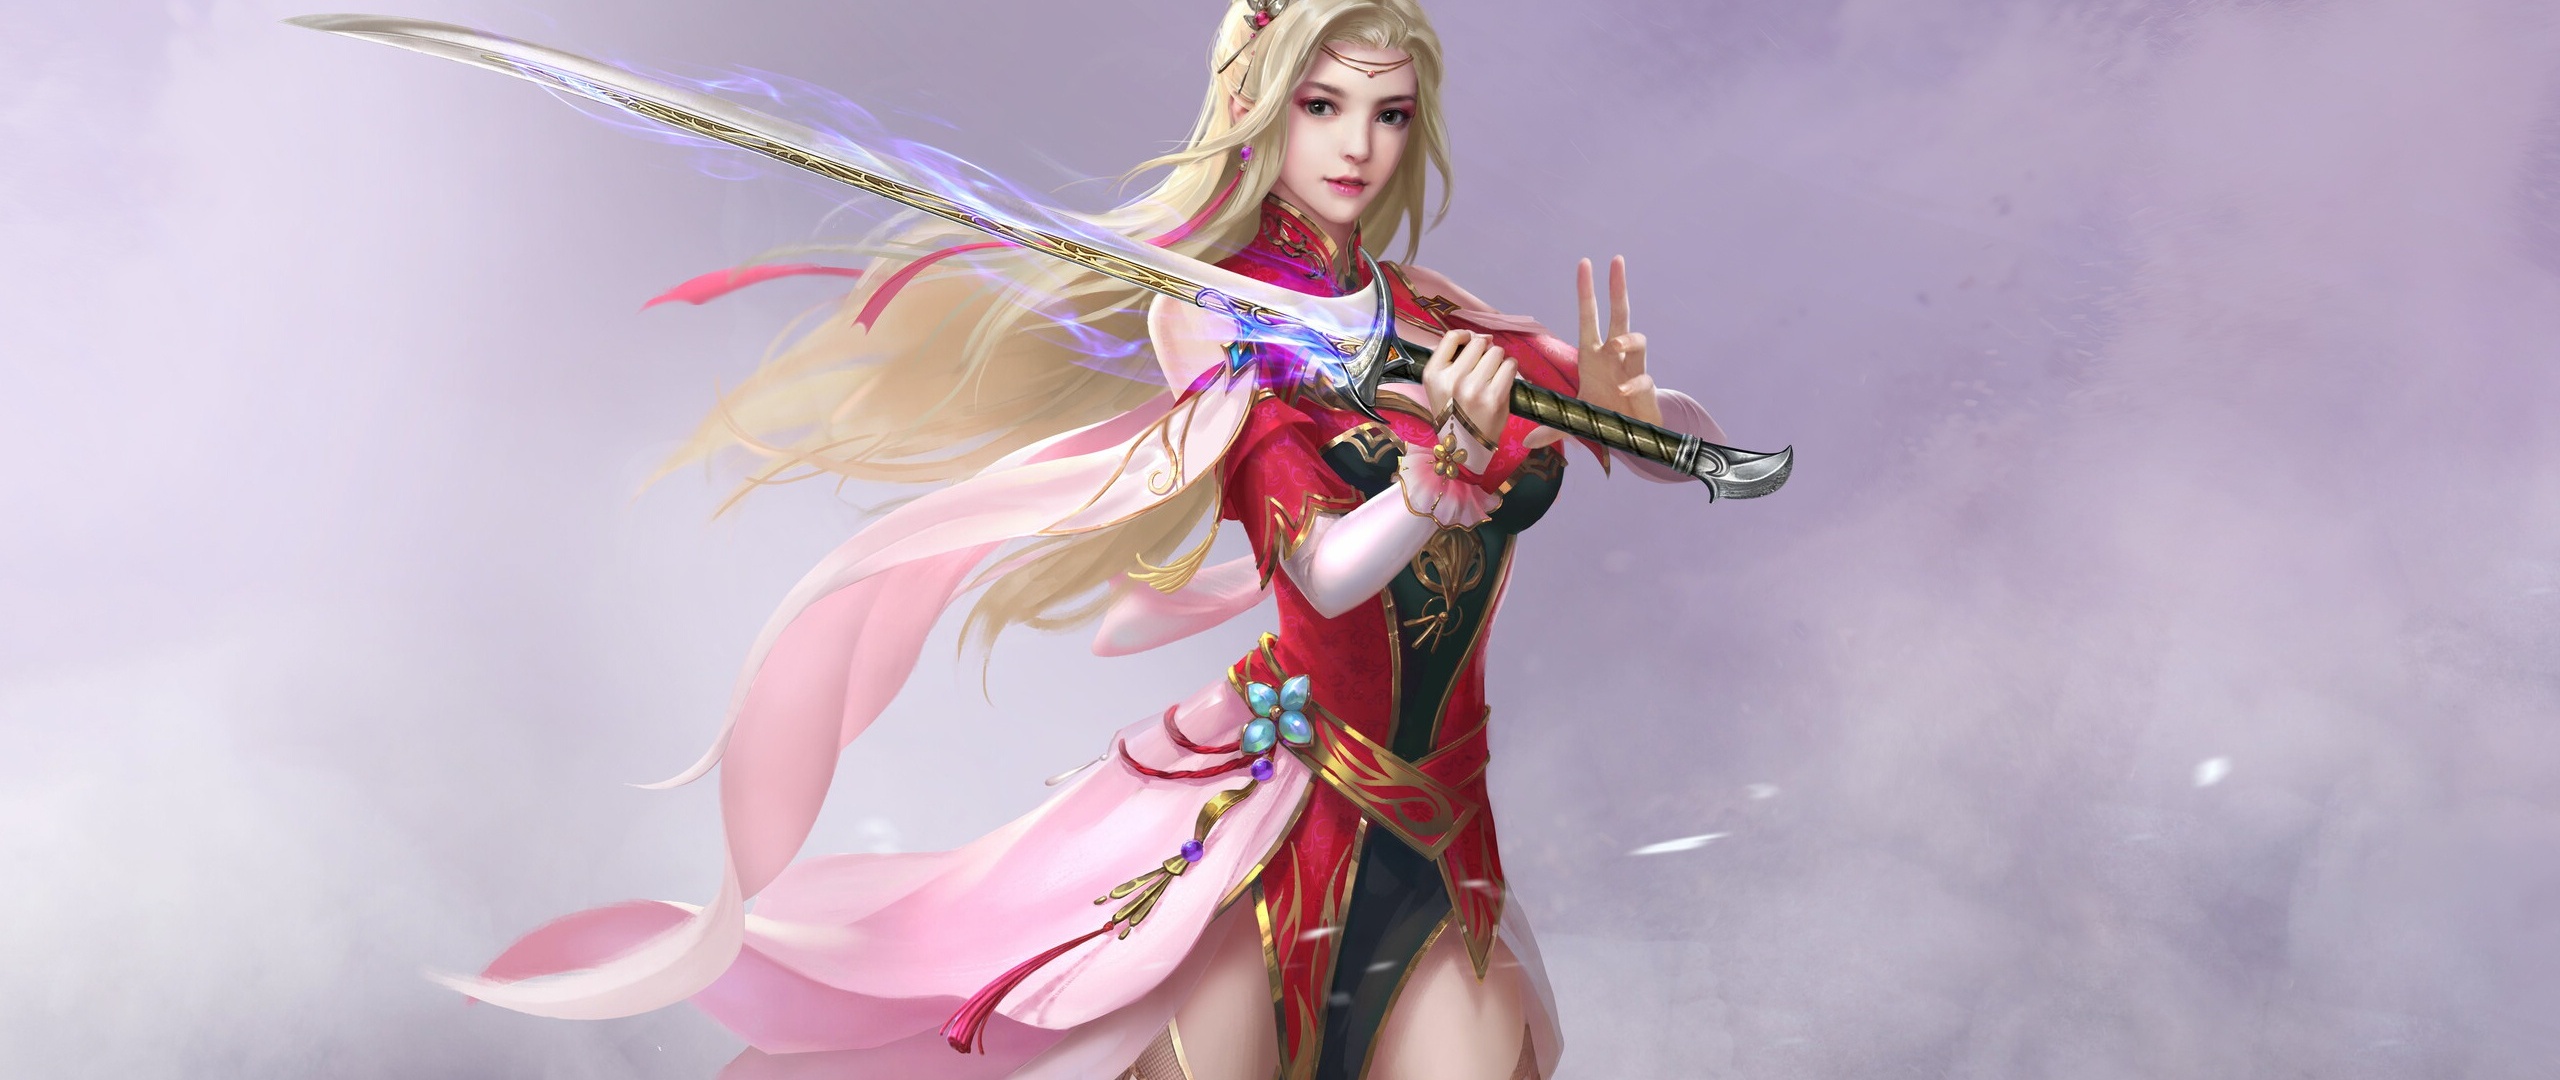 Sword Girl Fantasy Art Wallpaper In 2560x1080 Resolution